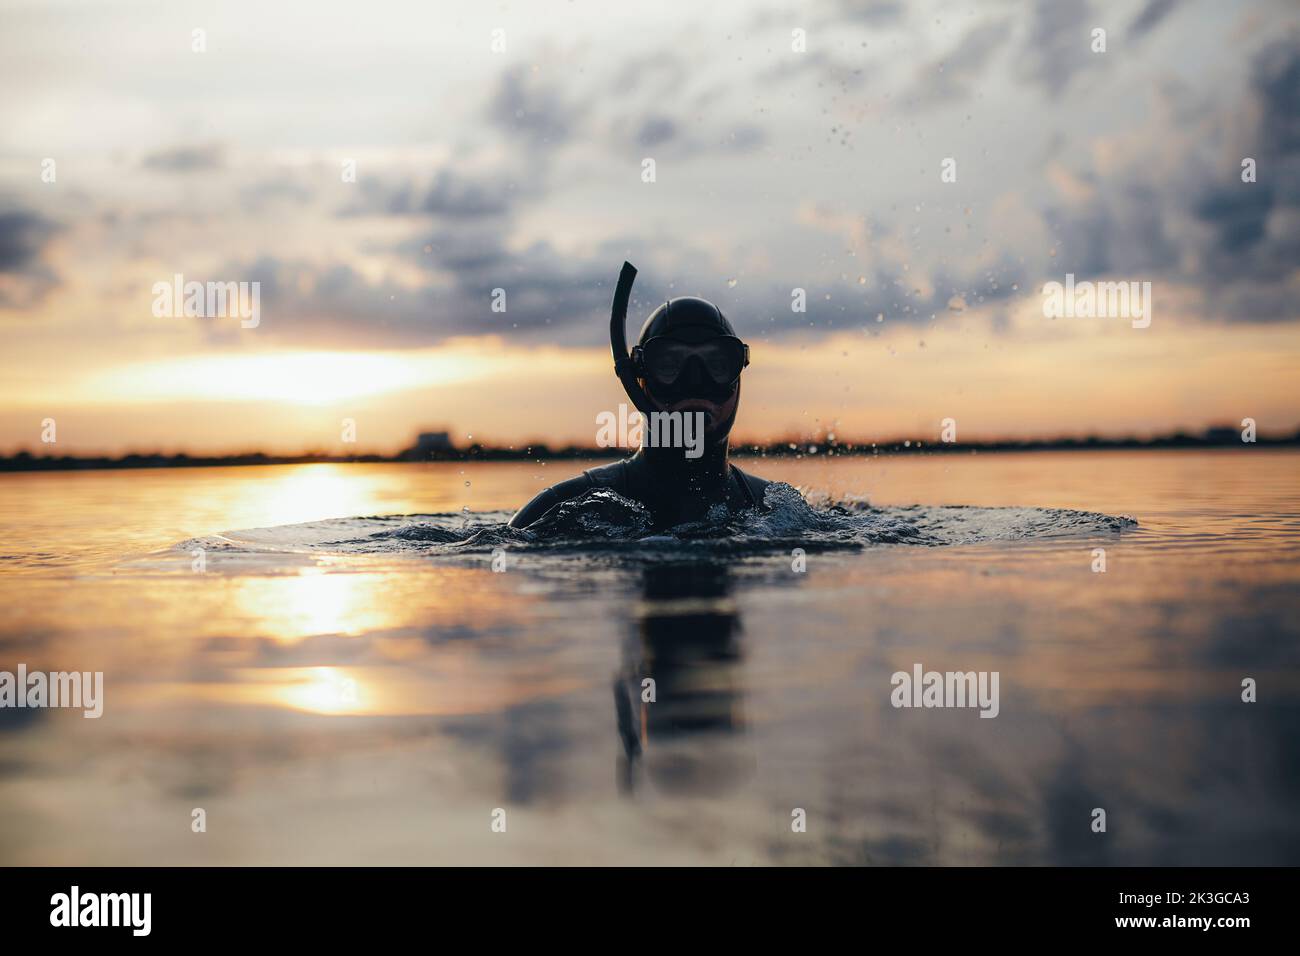 Aufnahme eines männlichen Tauchers mit Schnorchelausrüstung, die in Meerwasser getaucht ist. Abenteuerlicher junger Mann, der mitten im Meer schnorchelt. Stockfoto